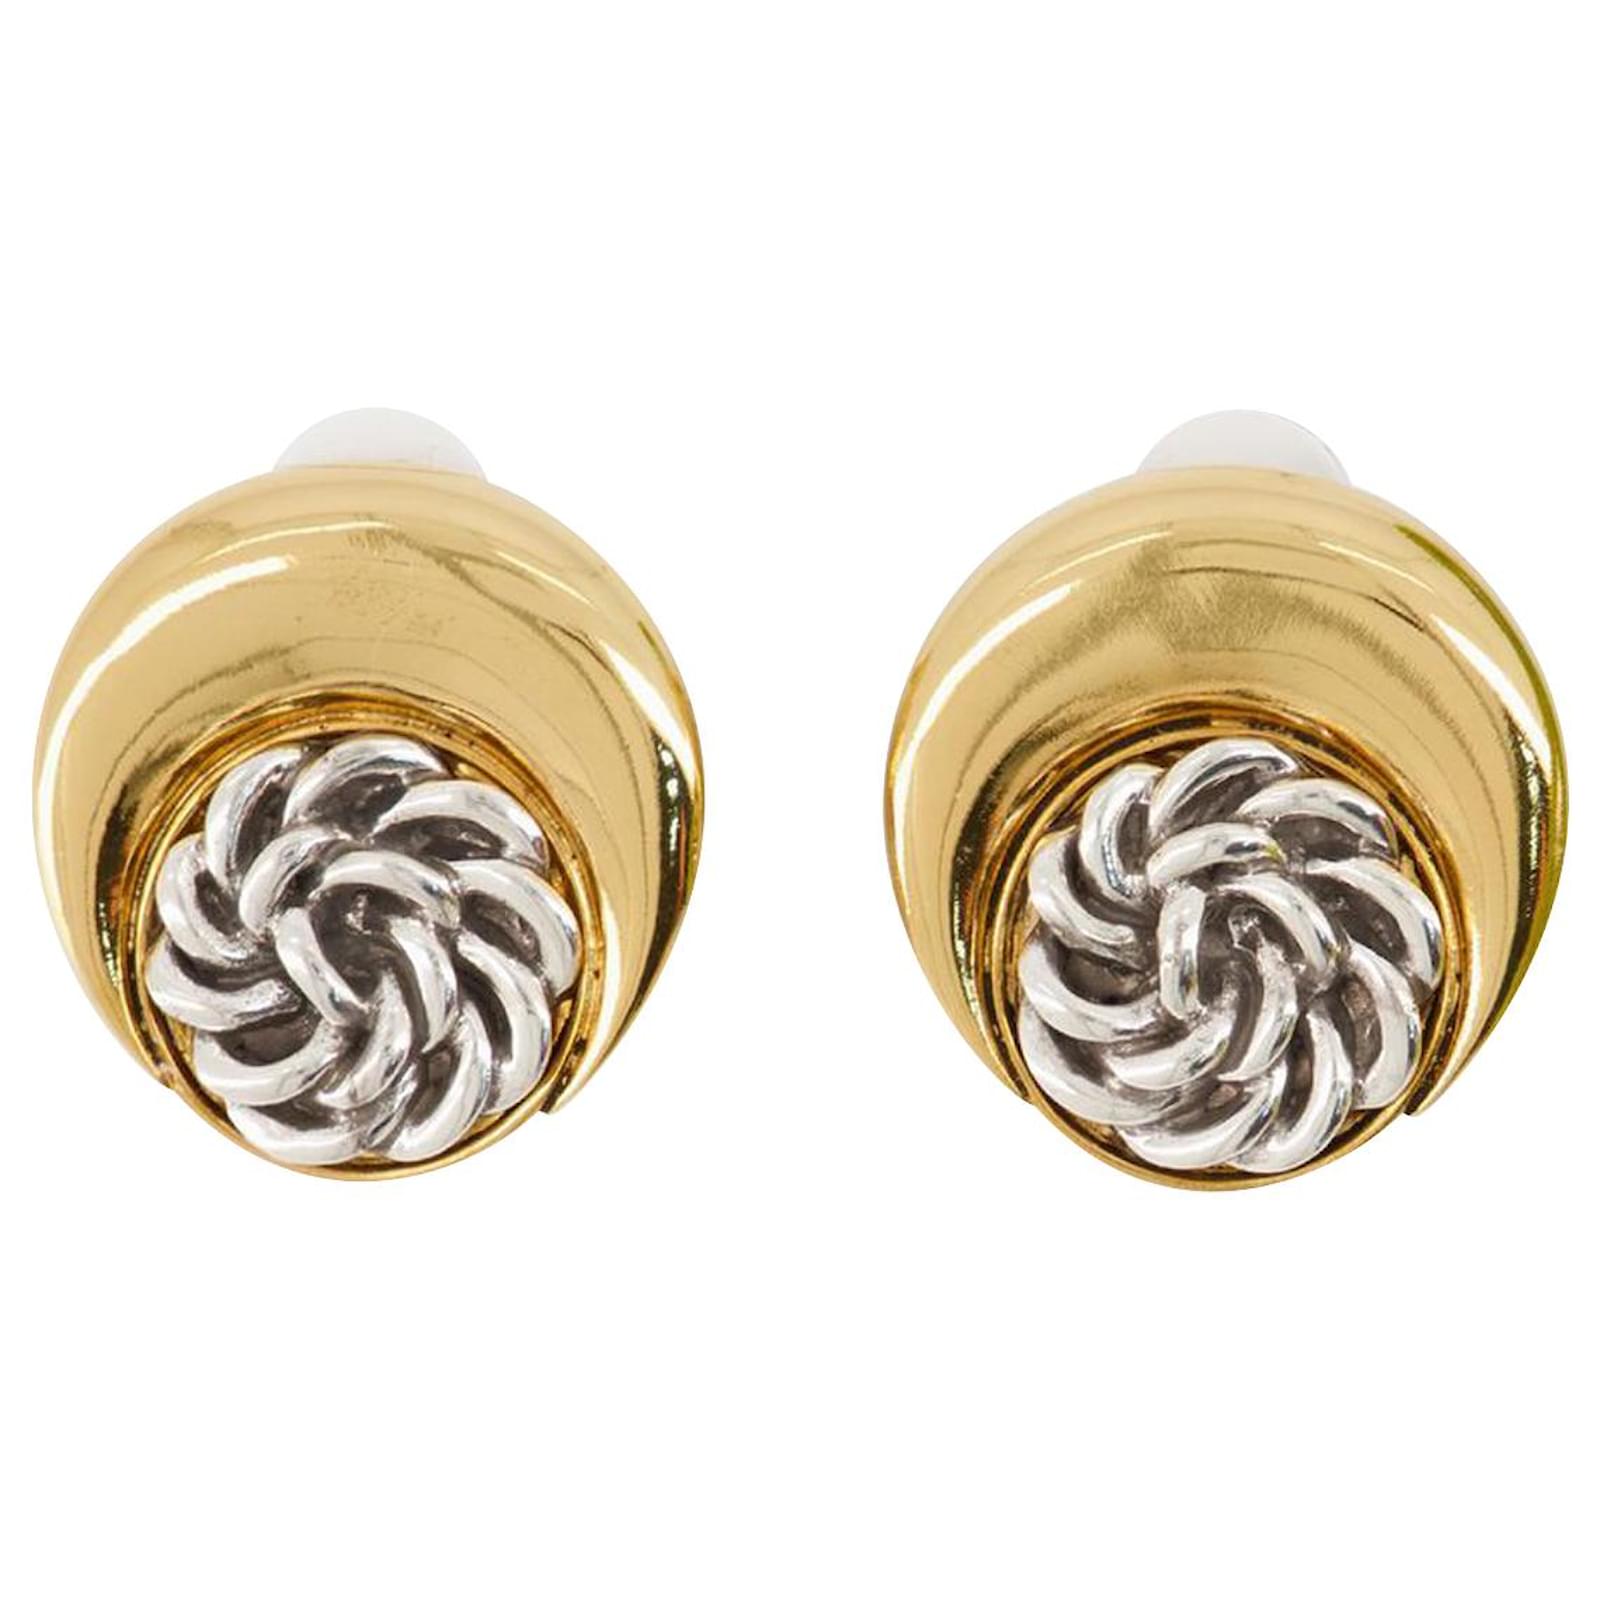 Regenerated Buttons Moon Earring - Marine Serre - Gold - Étain Golden ...